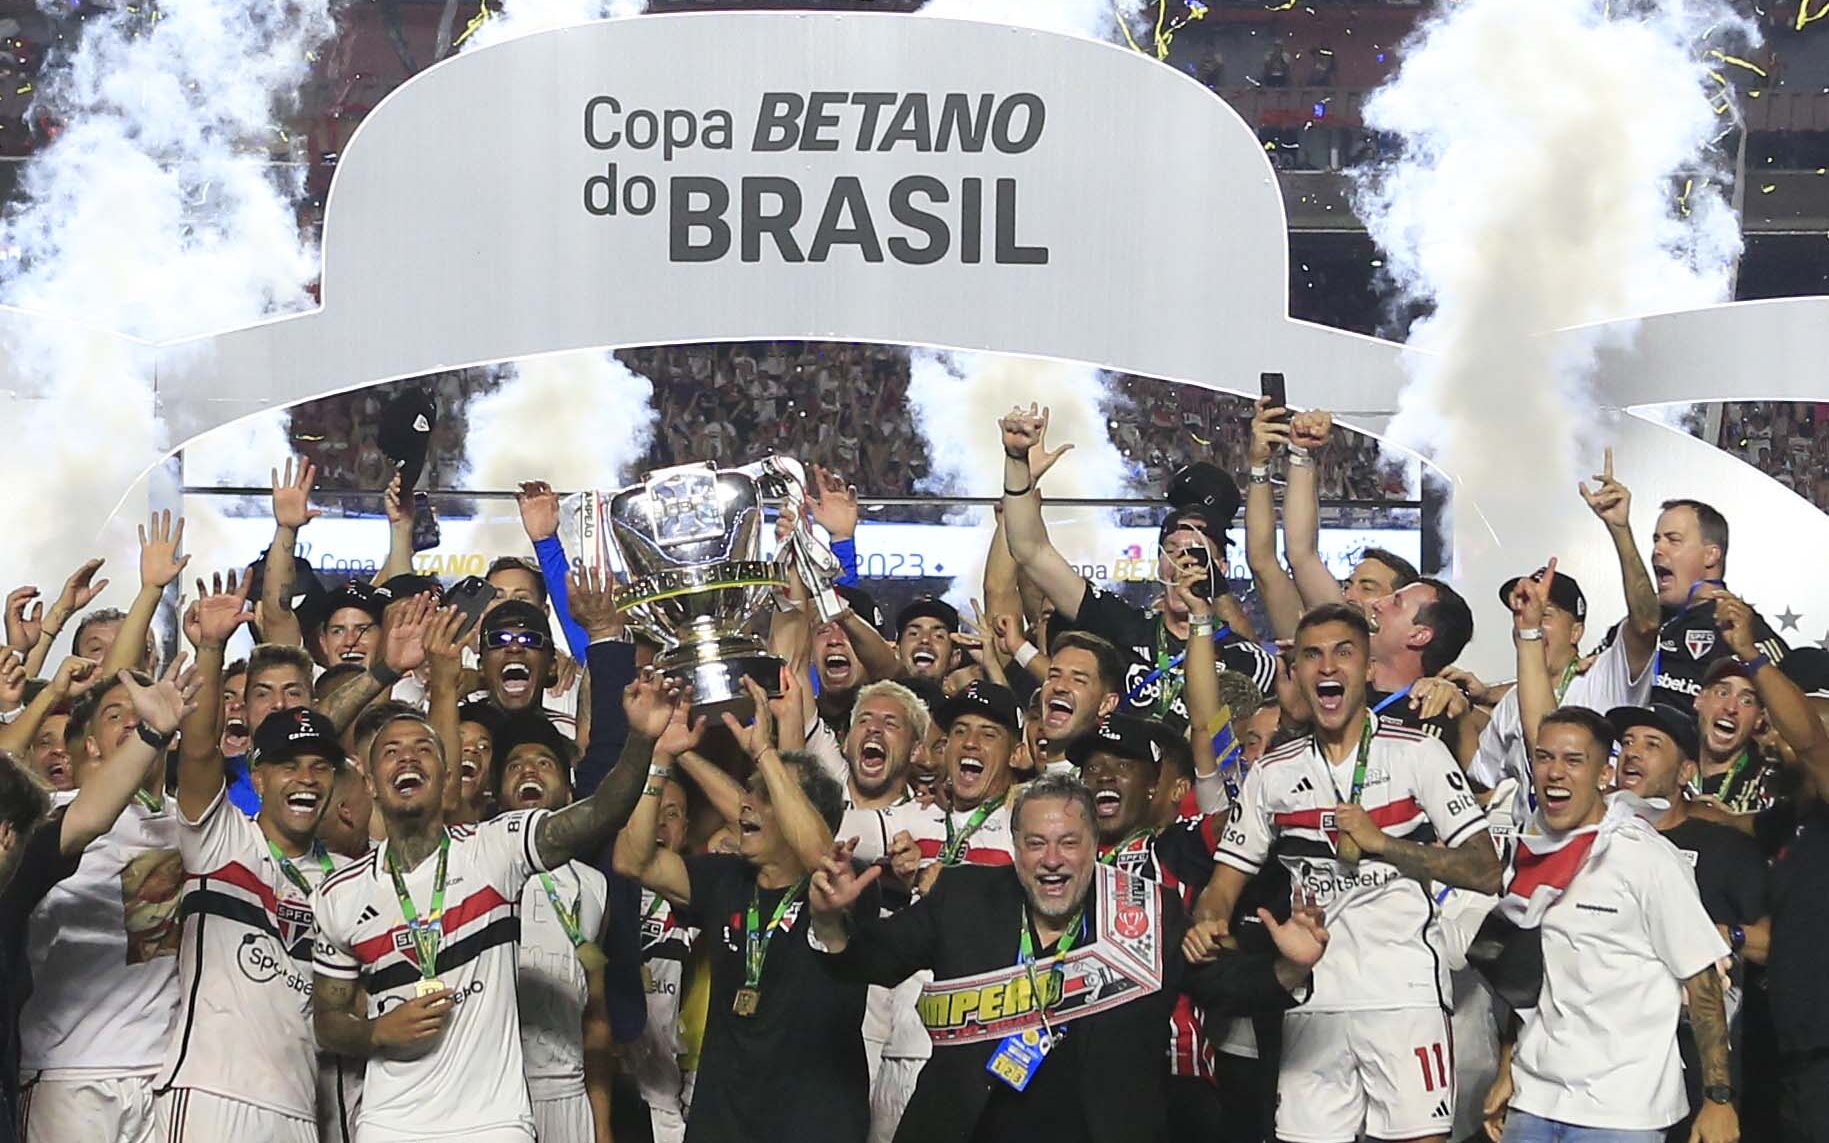 Veja a premiação do campeão da Copa do Brasil 2023